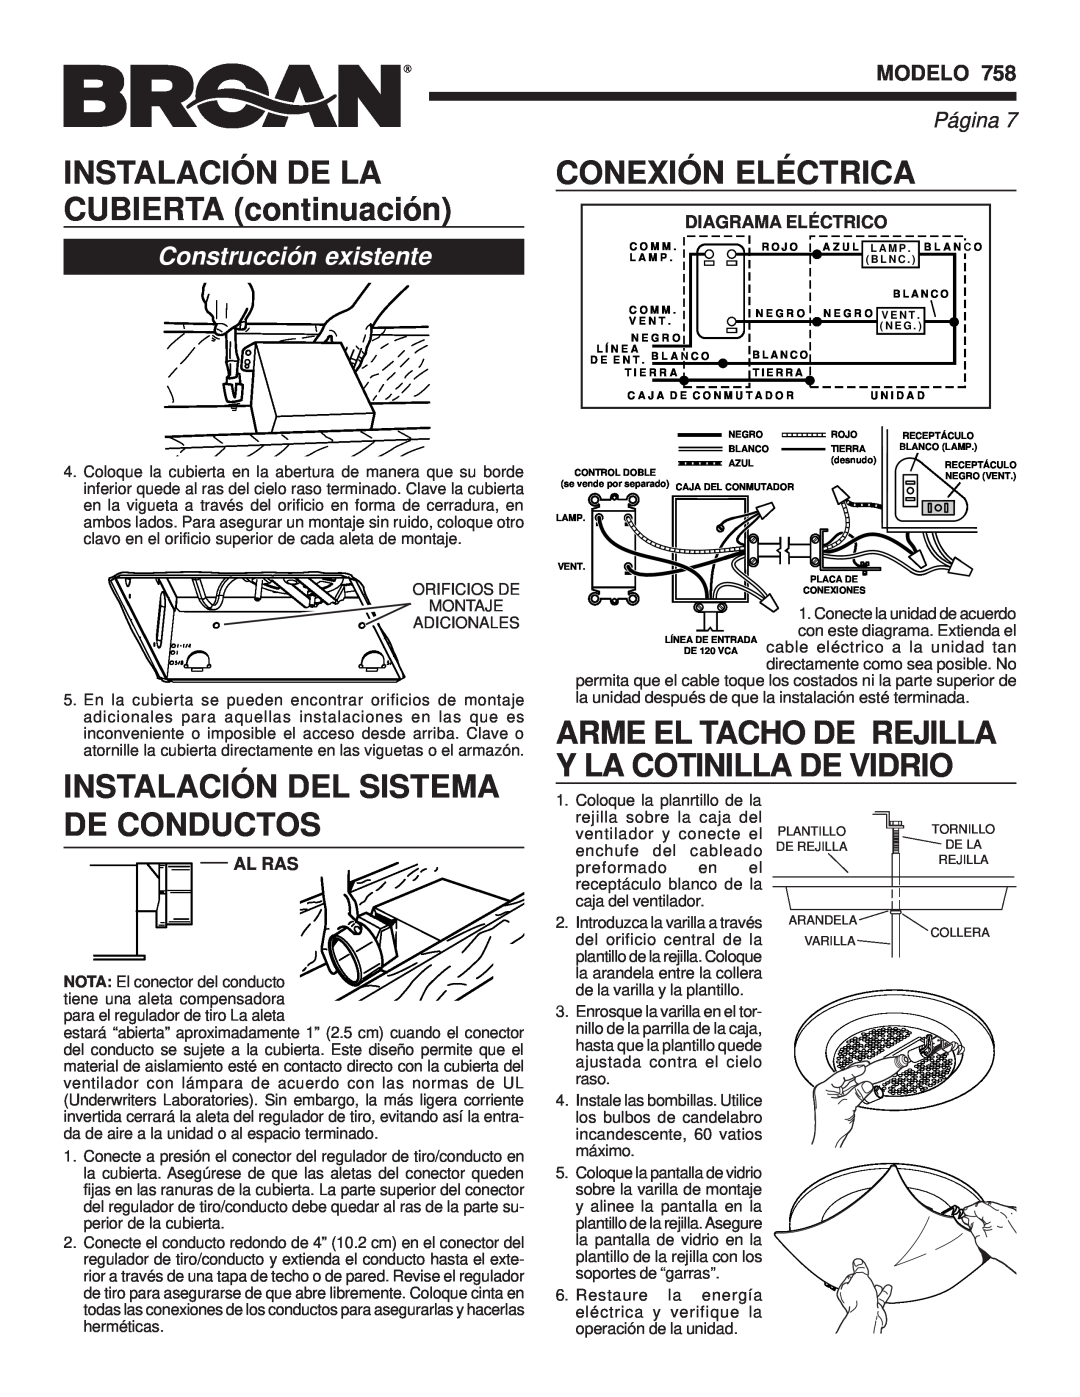 Broan 758 Instalación Del Sistema, Conexión Eléctrica, De Conductos, Arme El Tacho De Rejilla Y La Cotinilla De Vidrio 